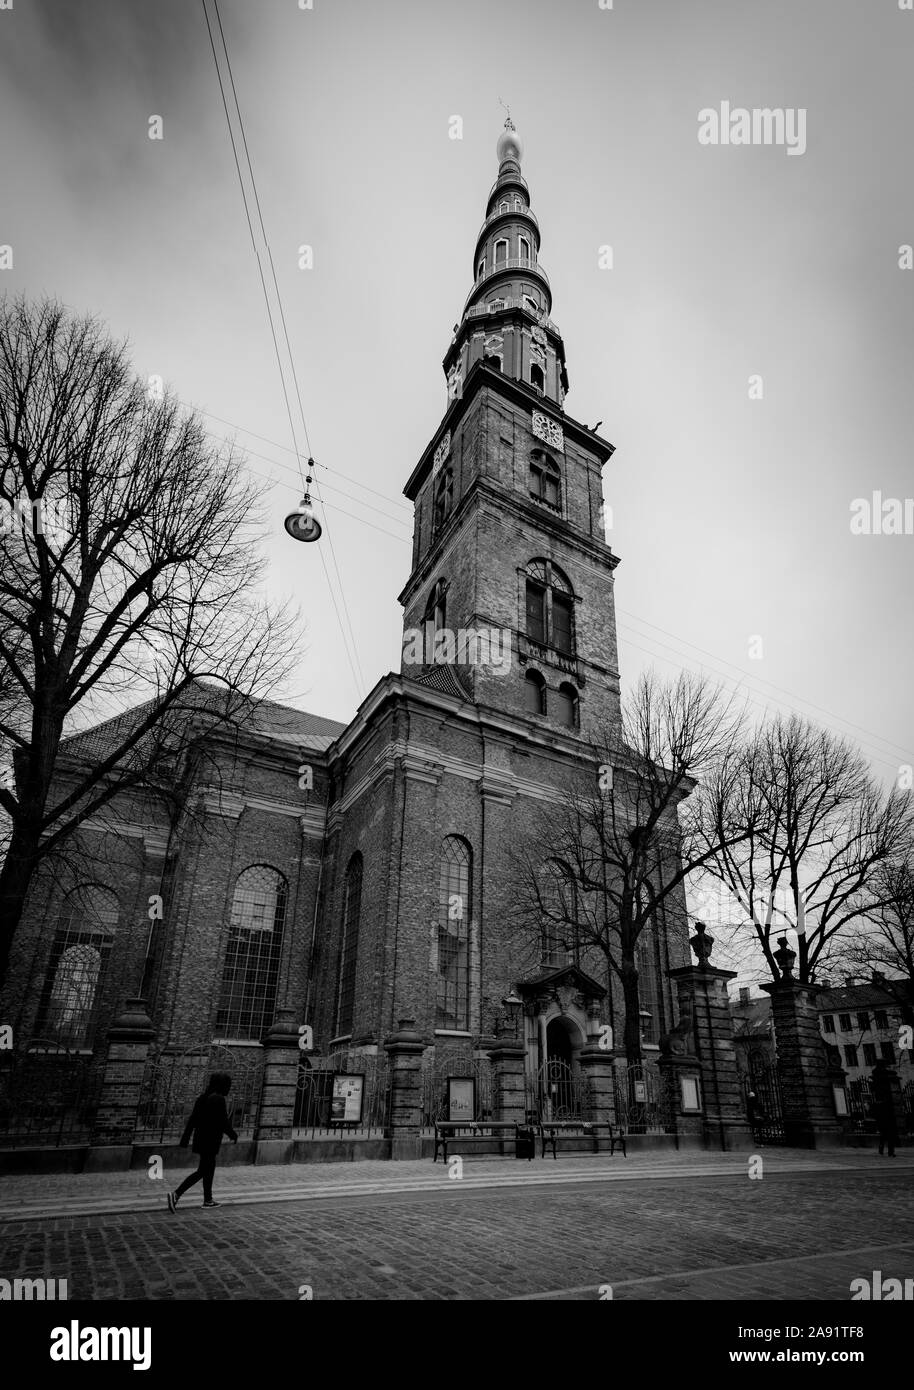 Die Kirche unseres Erlösers, eine barocke Kirche in Kopenhagen, Dänemark, berühmt für seine Helix spire Stockfoto